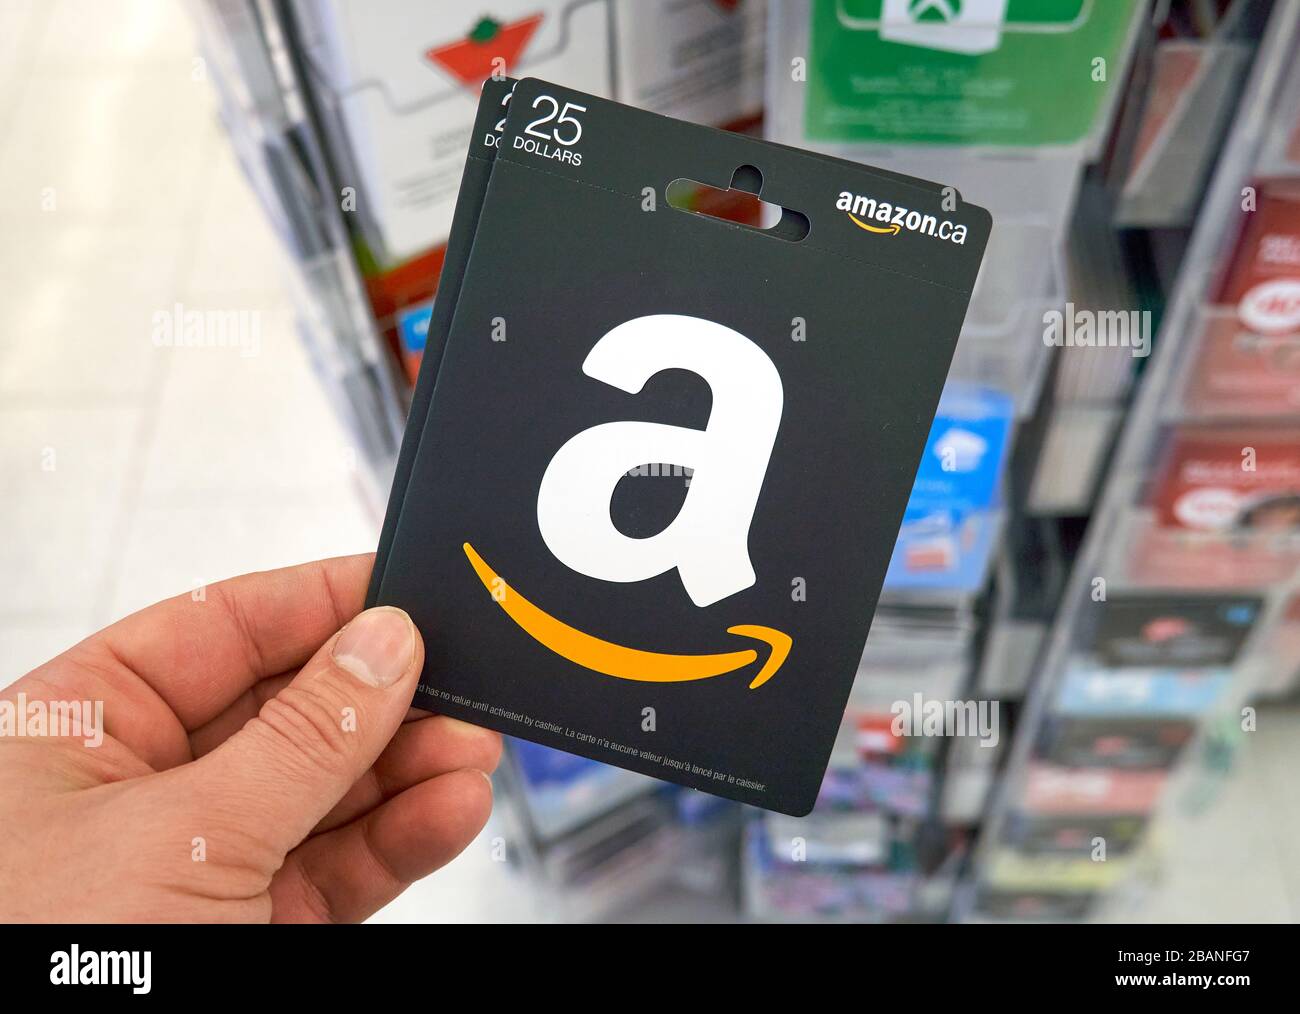 Amazon gift card immagini e fotografie stock ad alta risoluzione - Alamy